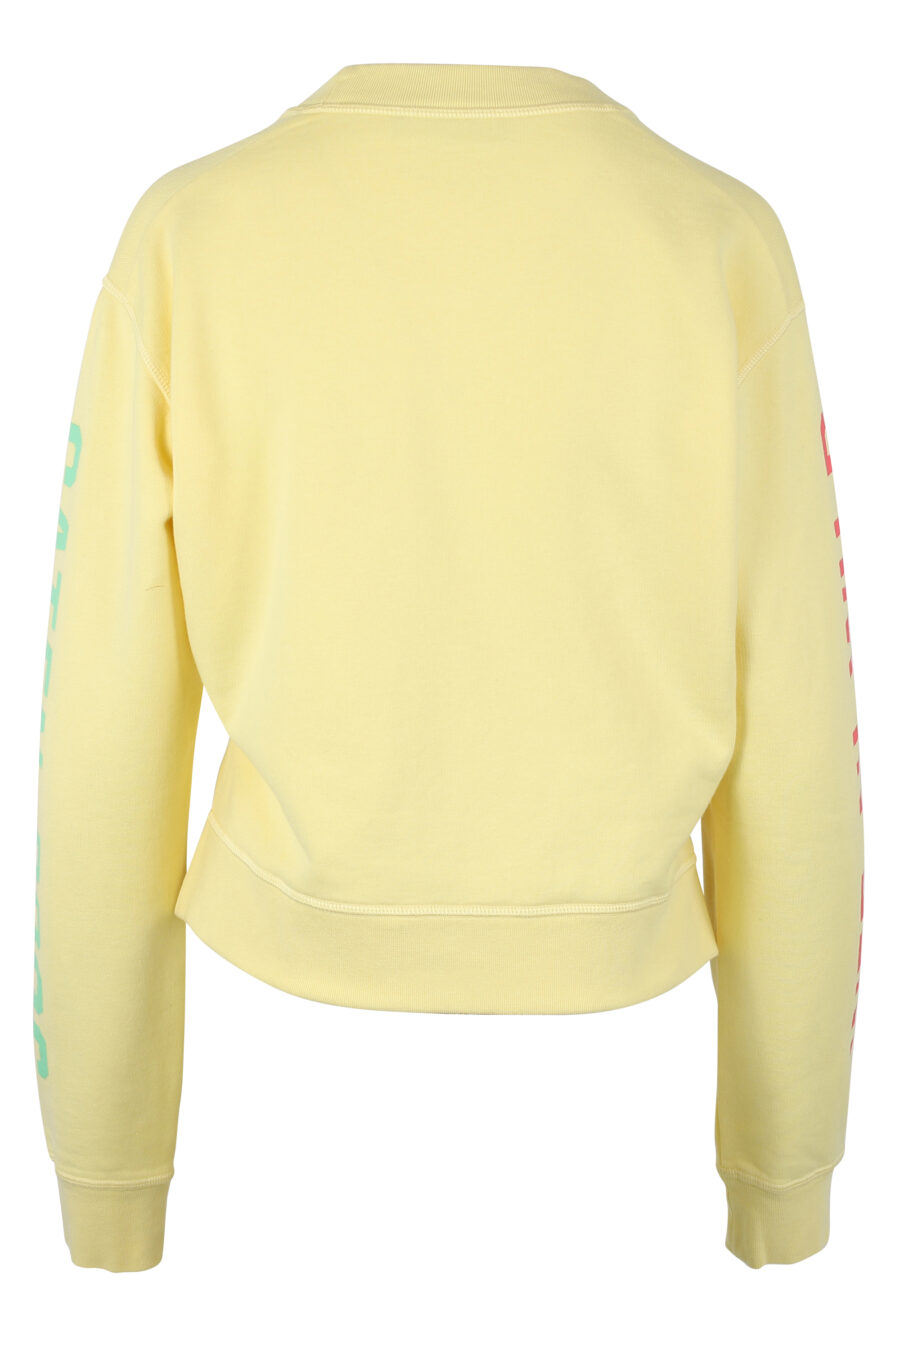 Gelbes Sweatshirt mit grünem Maxilogo und Text auf den Ärmeln - IMG 9777